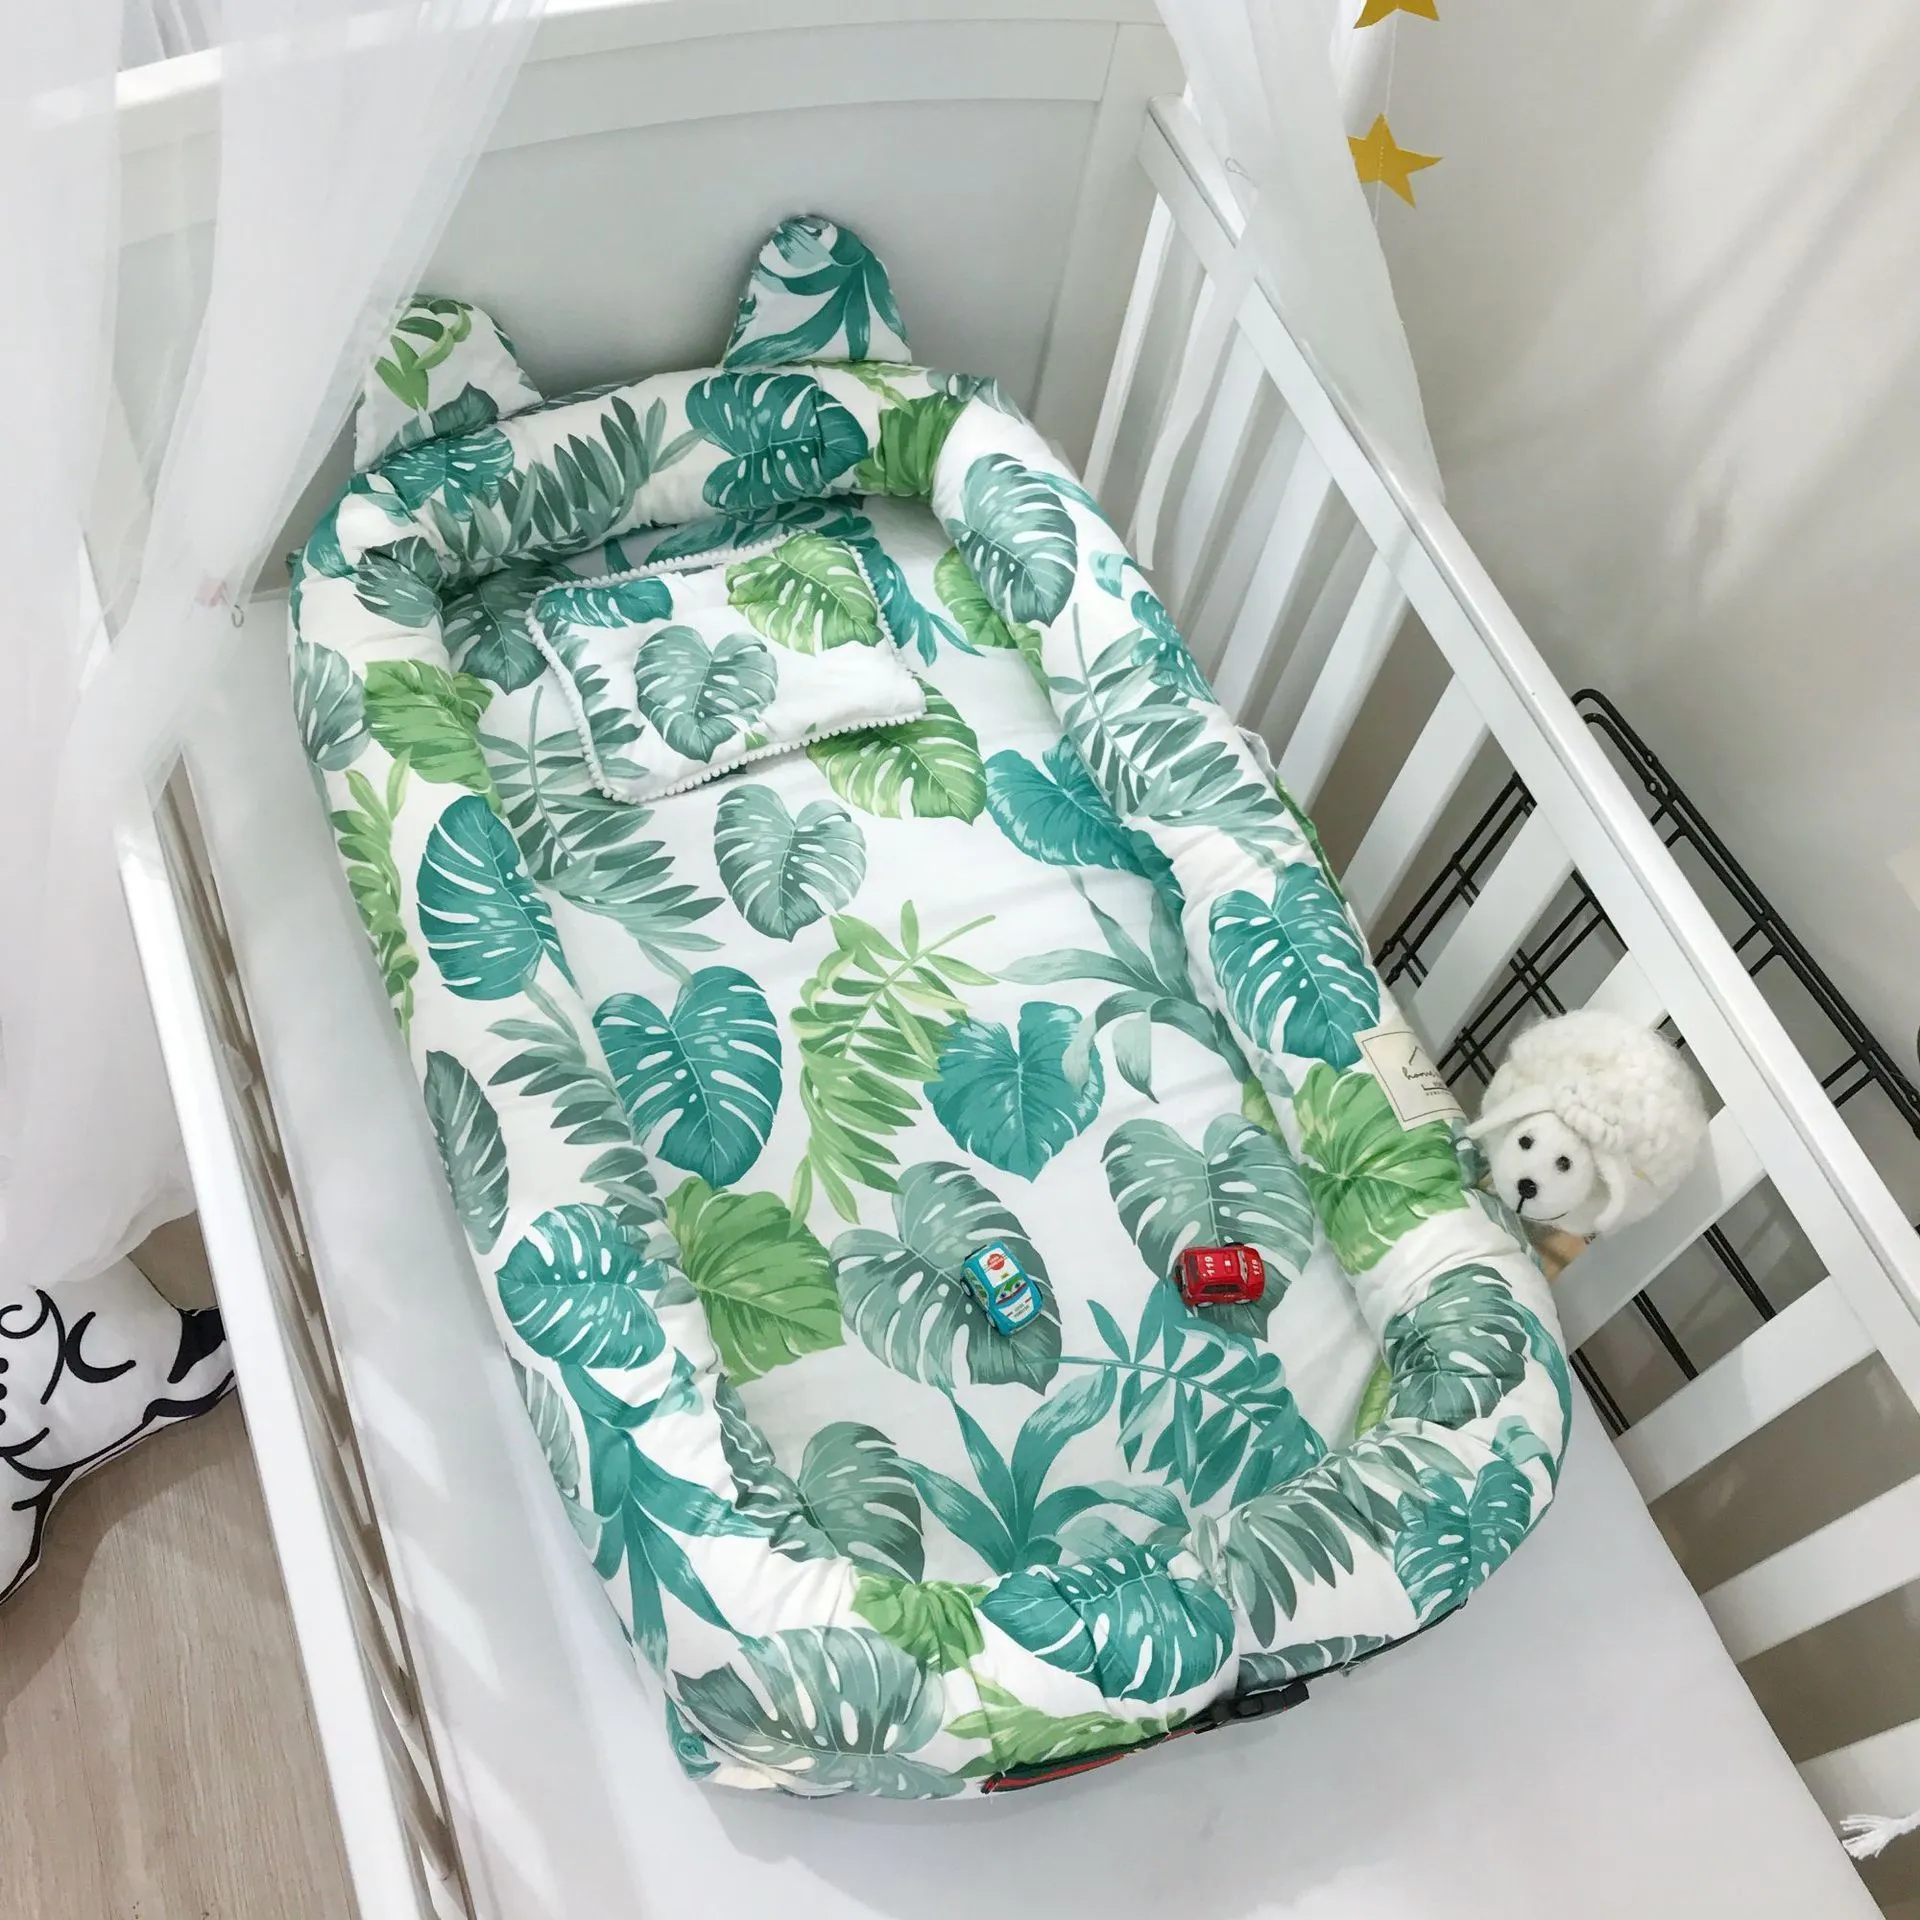 Baaobaab erdc 귀여운 귀면 침대 유아 둥지 둥지 휴대용 아기 침대 신생아 크래들 세탁 가능한 요람 c190419013800576